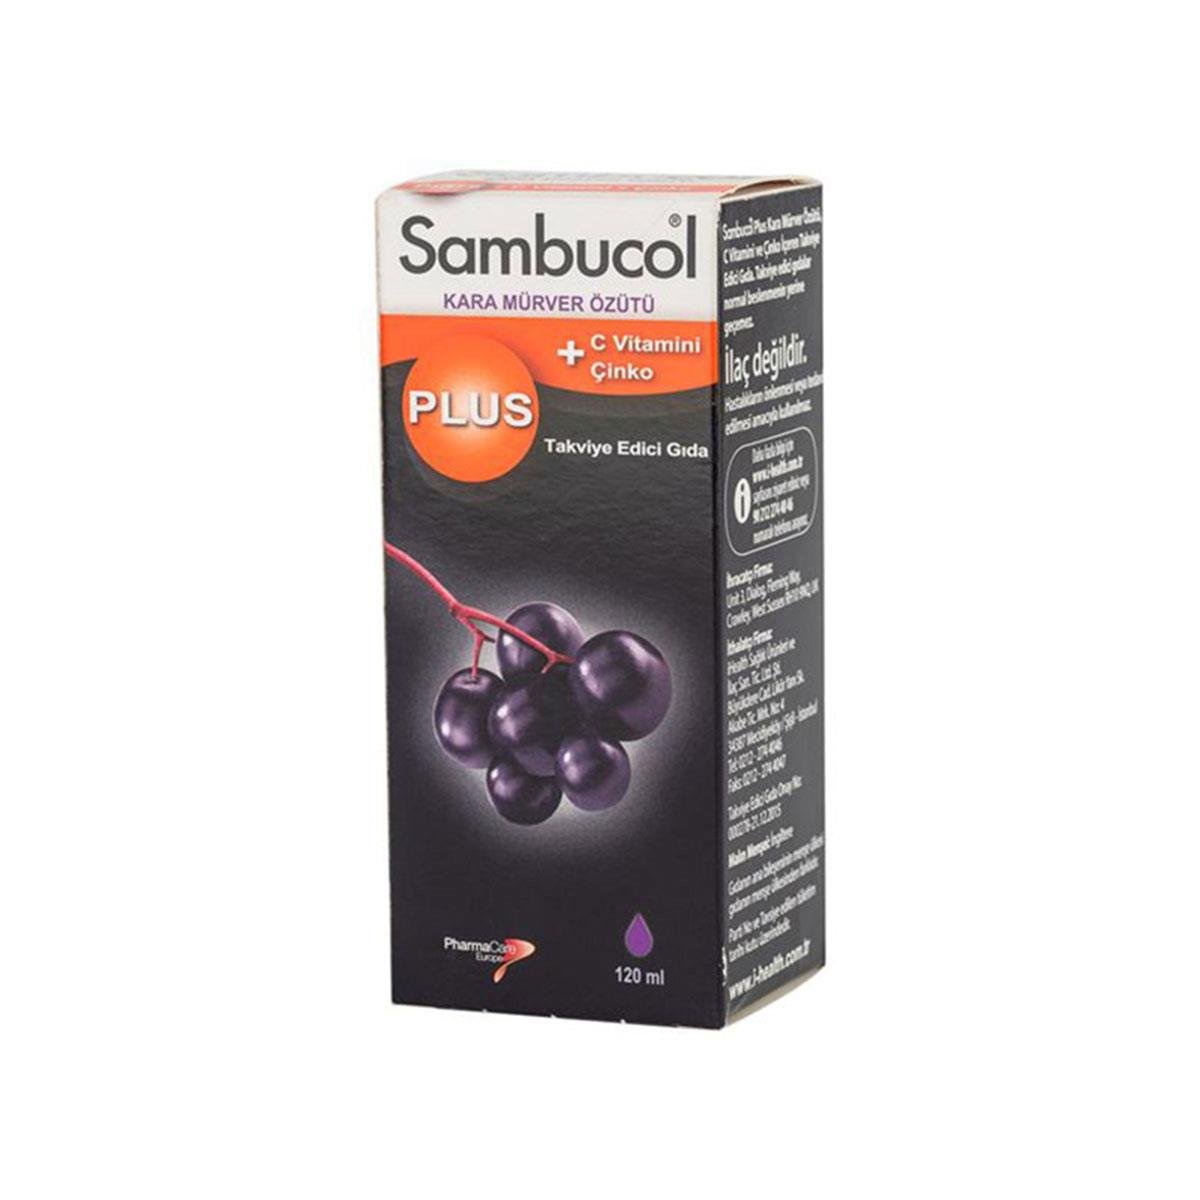 Sambucol Plus Kara Mürver Özütü, C Vitamini ve Çinko İçeren Takviye Edici  Gıda 120 ml - Daffne